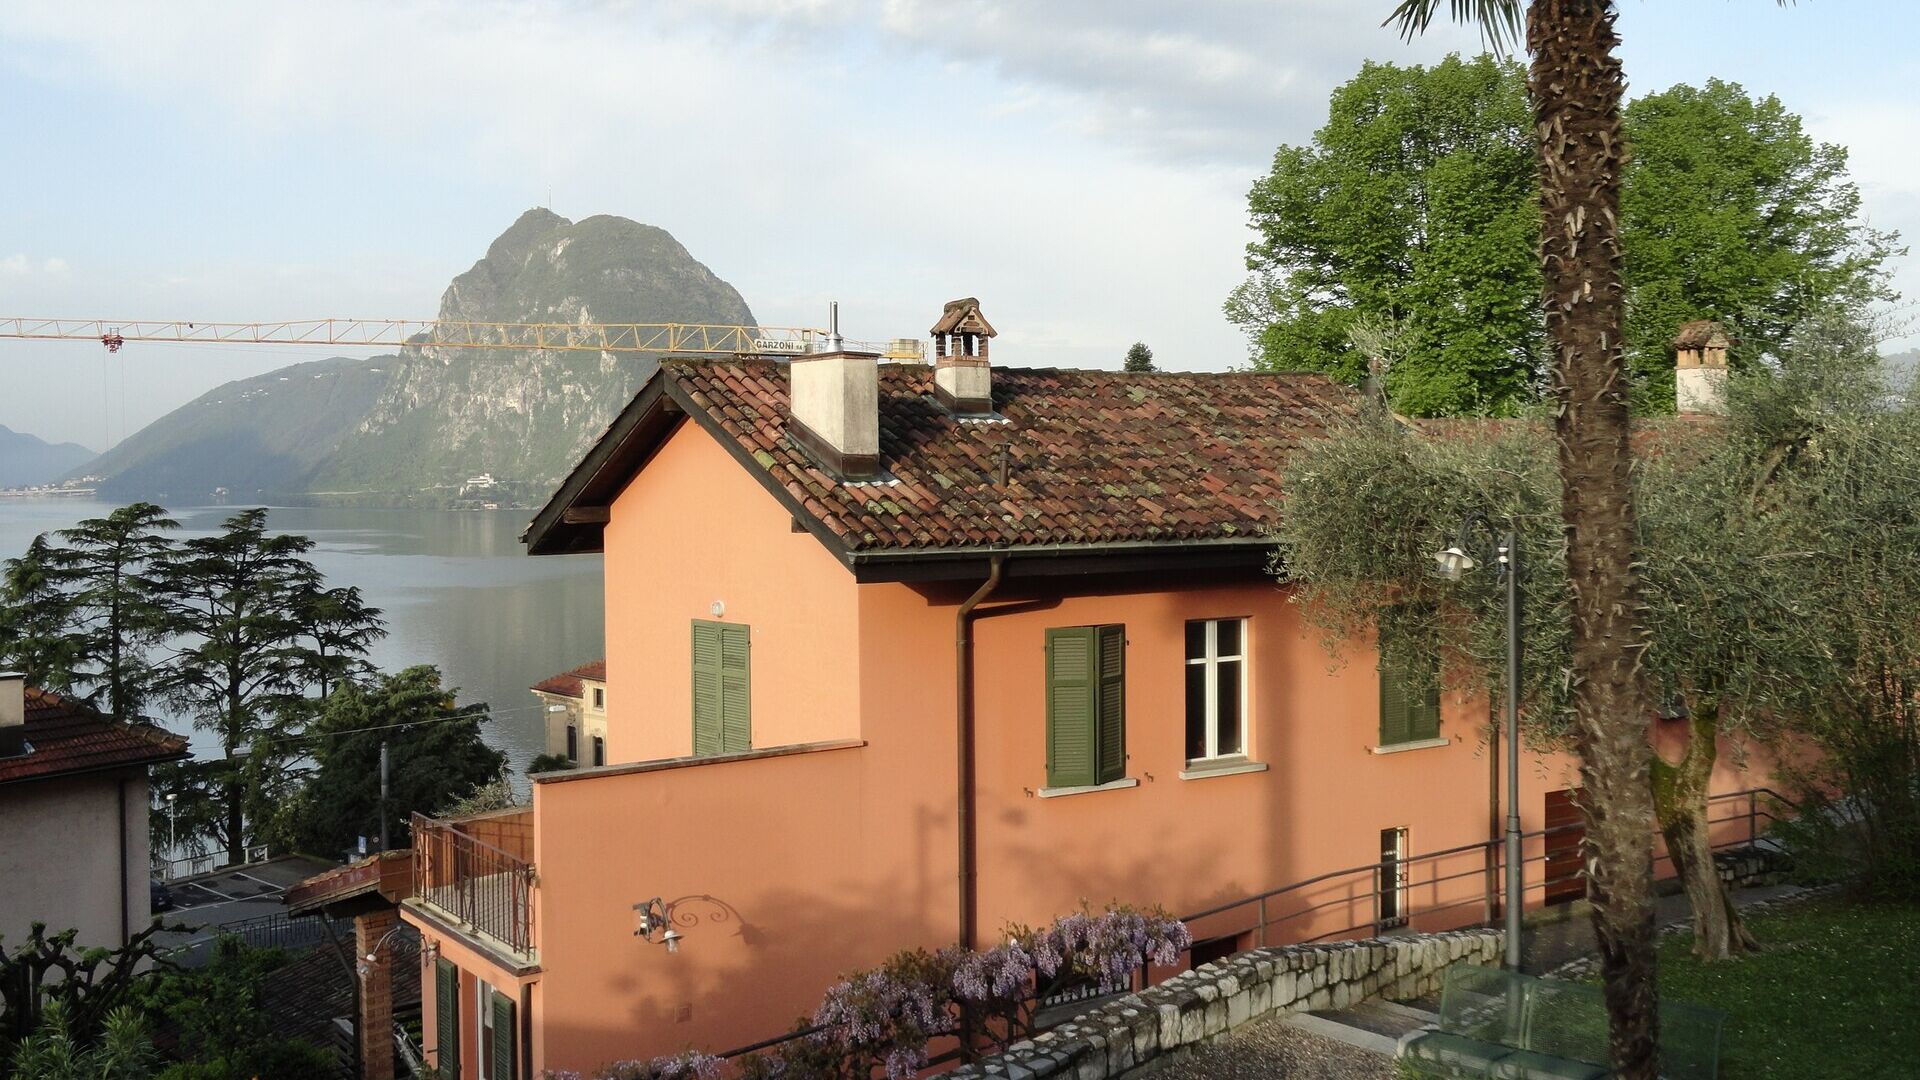 Shkenca njerëzore dhe natyrore: Casa Carla Cattaneo në Castagnola, në territorin e Komunës së Luganos, në Kantonin Ticino: do të presë Fondacionin IBSA për Kërkime Shkencore, i cili i vendos vetes synime të reja ambicioze